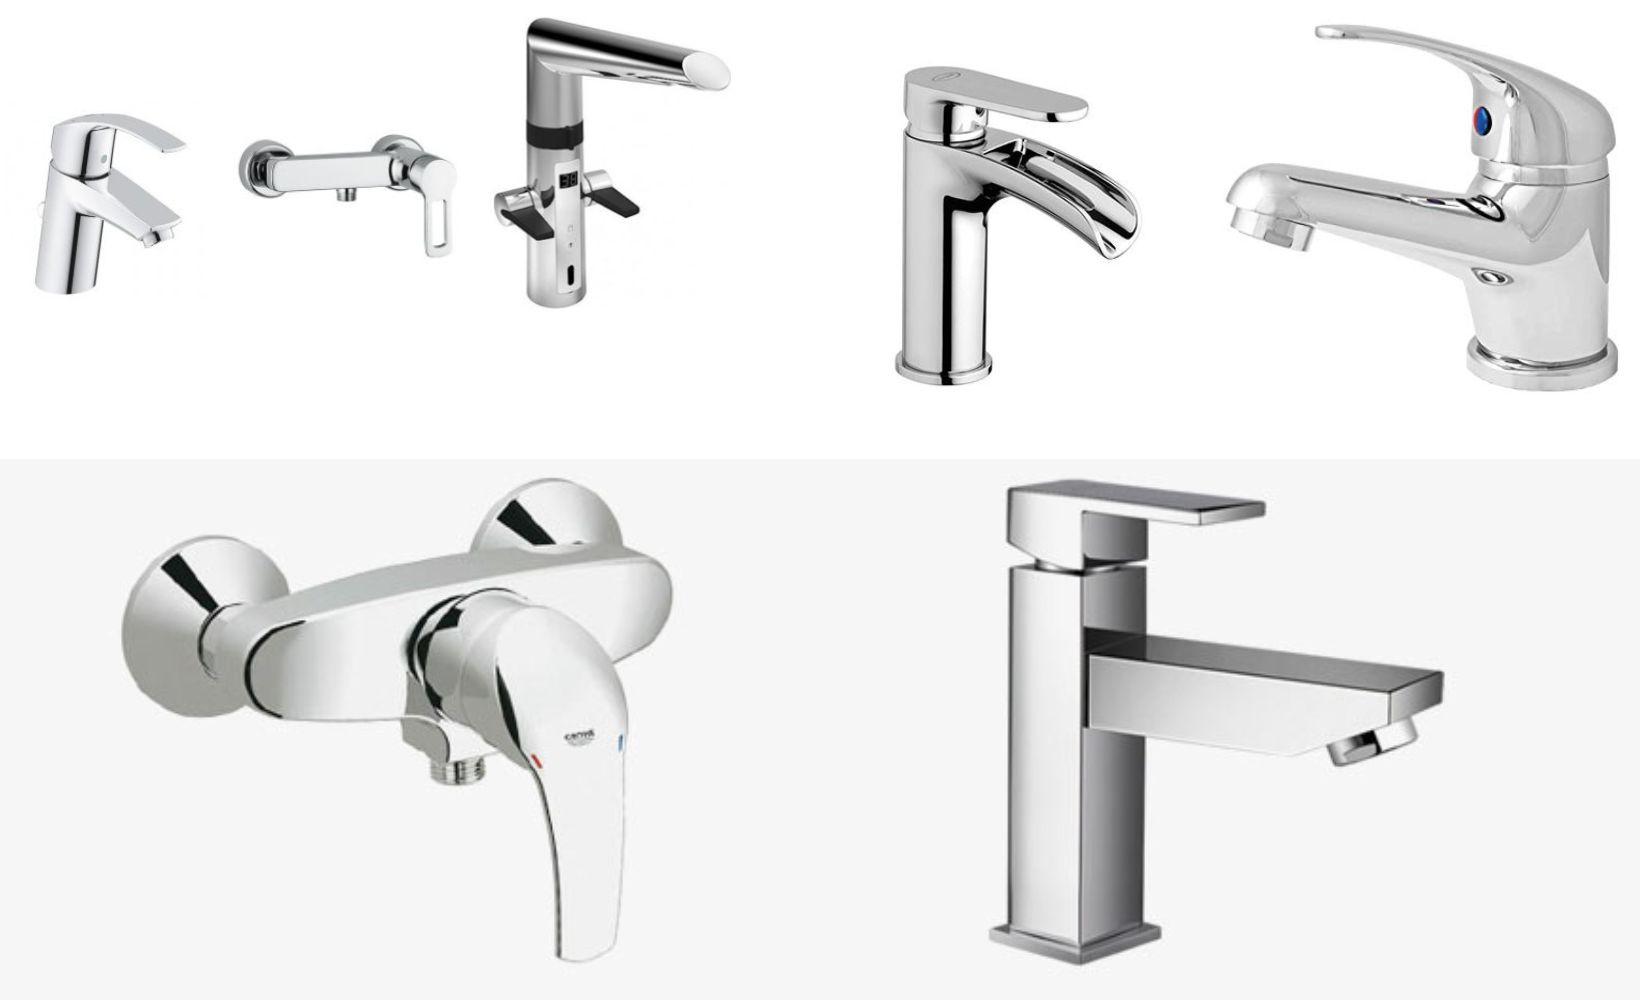 Les differents types de robinets et leurs prix moyens d installation